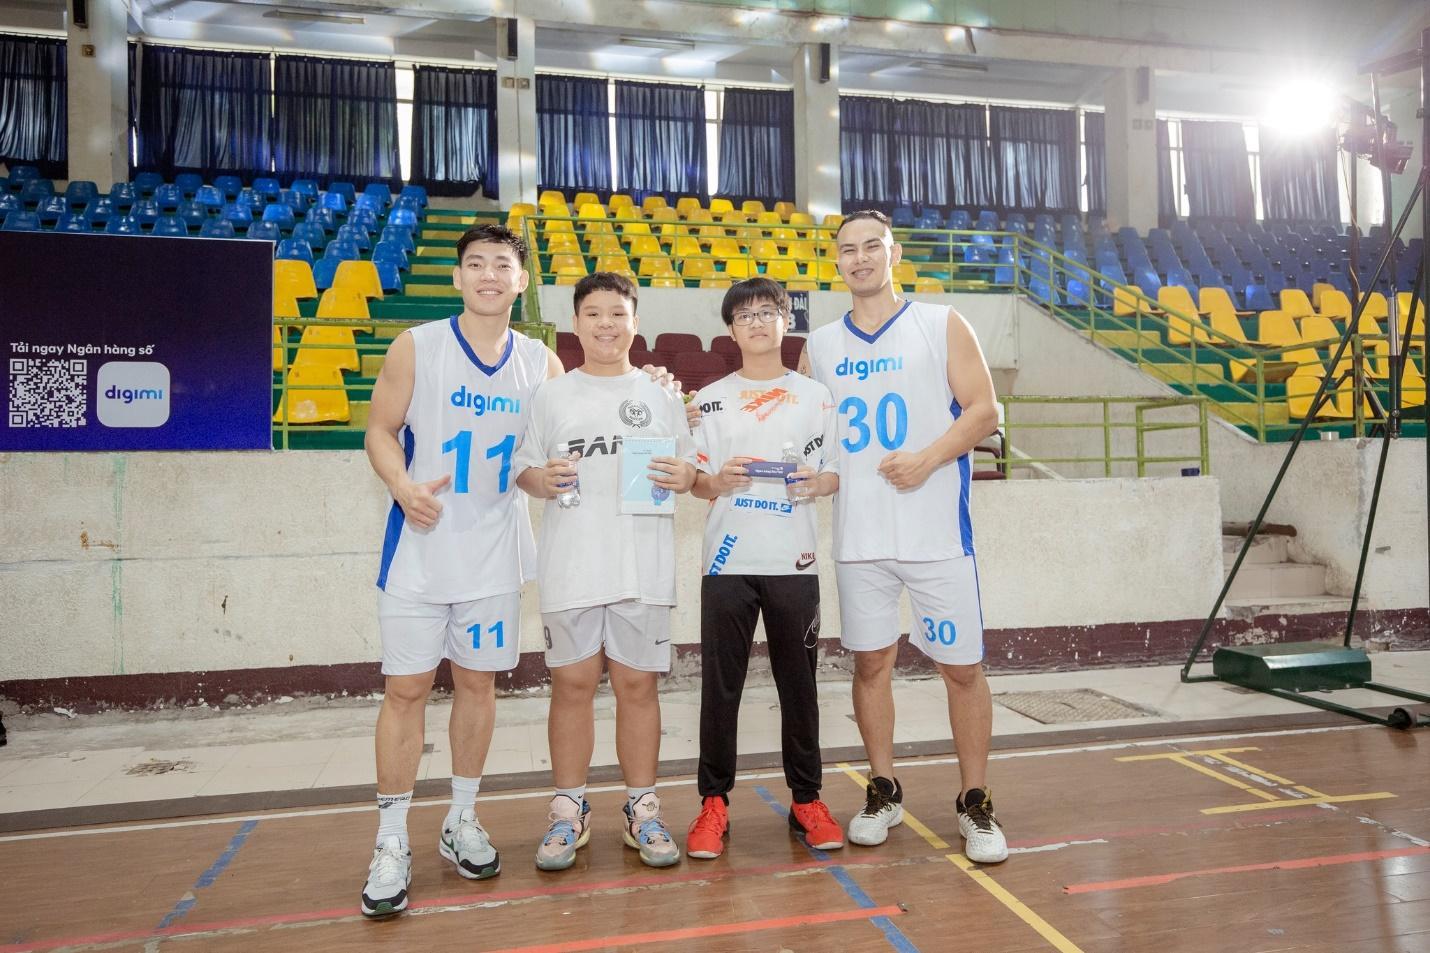 Justin Young, Kim Bản, Tim Waale cùng ngân hàng số Digimi truyền cảm hứng tới thế hệ trẻ Việt Nam - Ảnh 3.